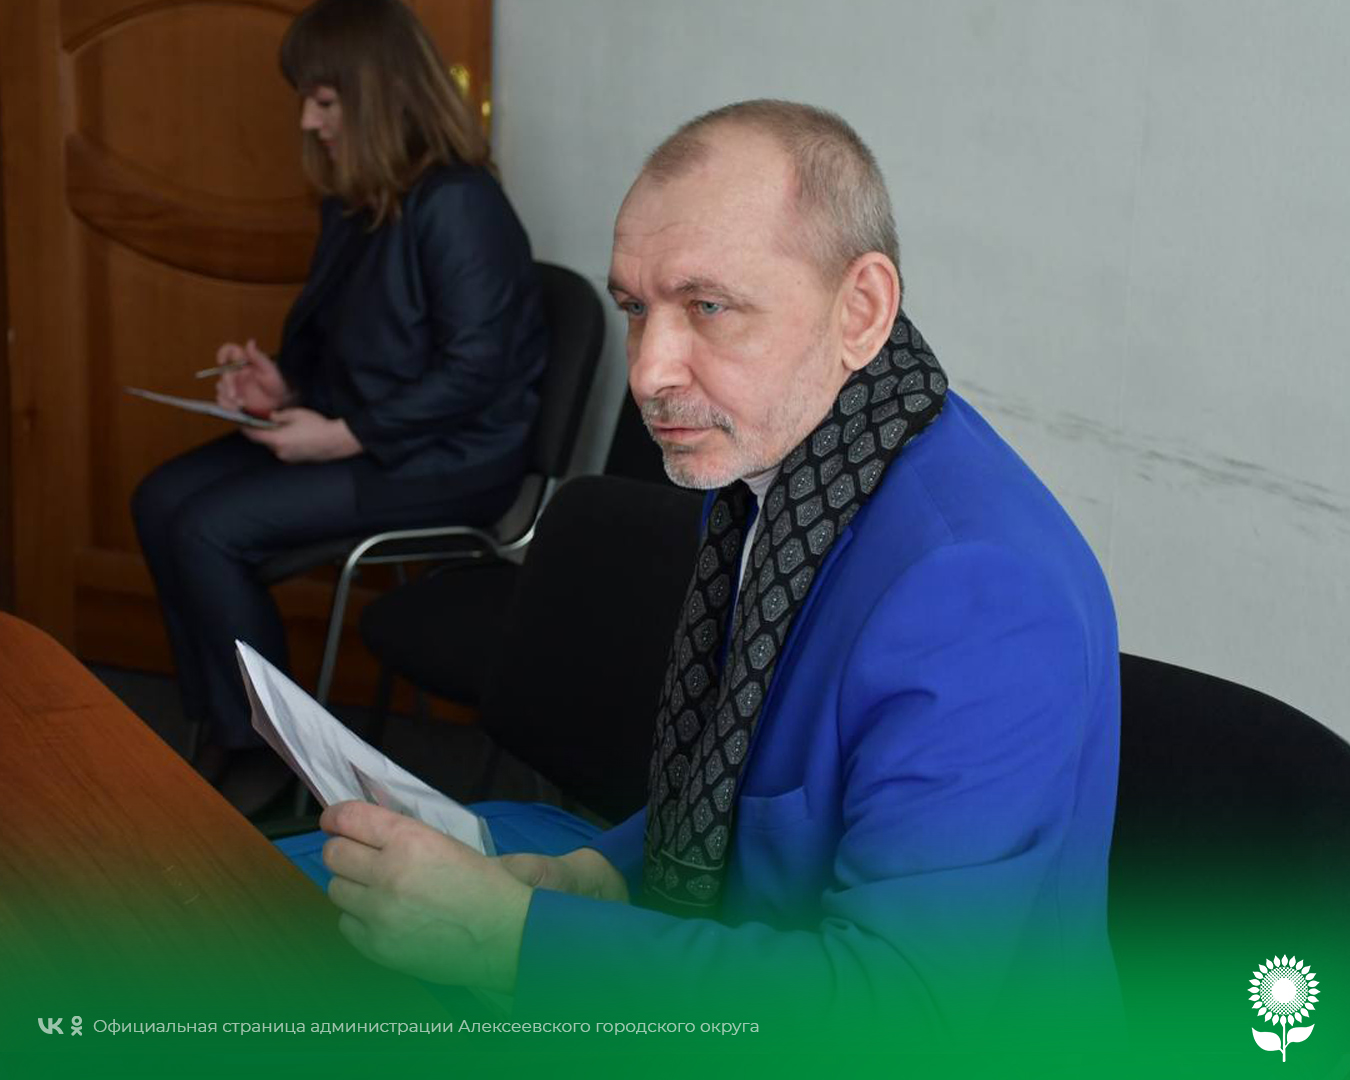 Сегодня первый заместитель главы администрации Алексеевского городского округа по АПК и имуществу  Алексей Федорович Горбатенко провёл личный приём граждан